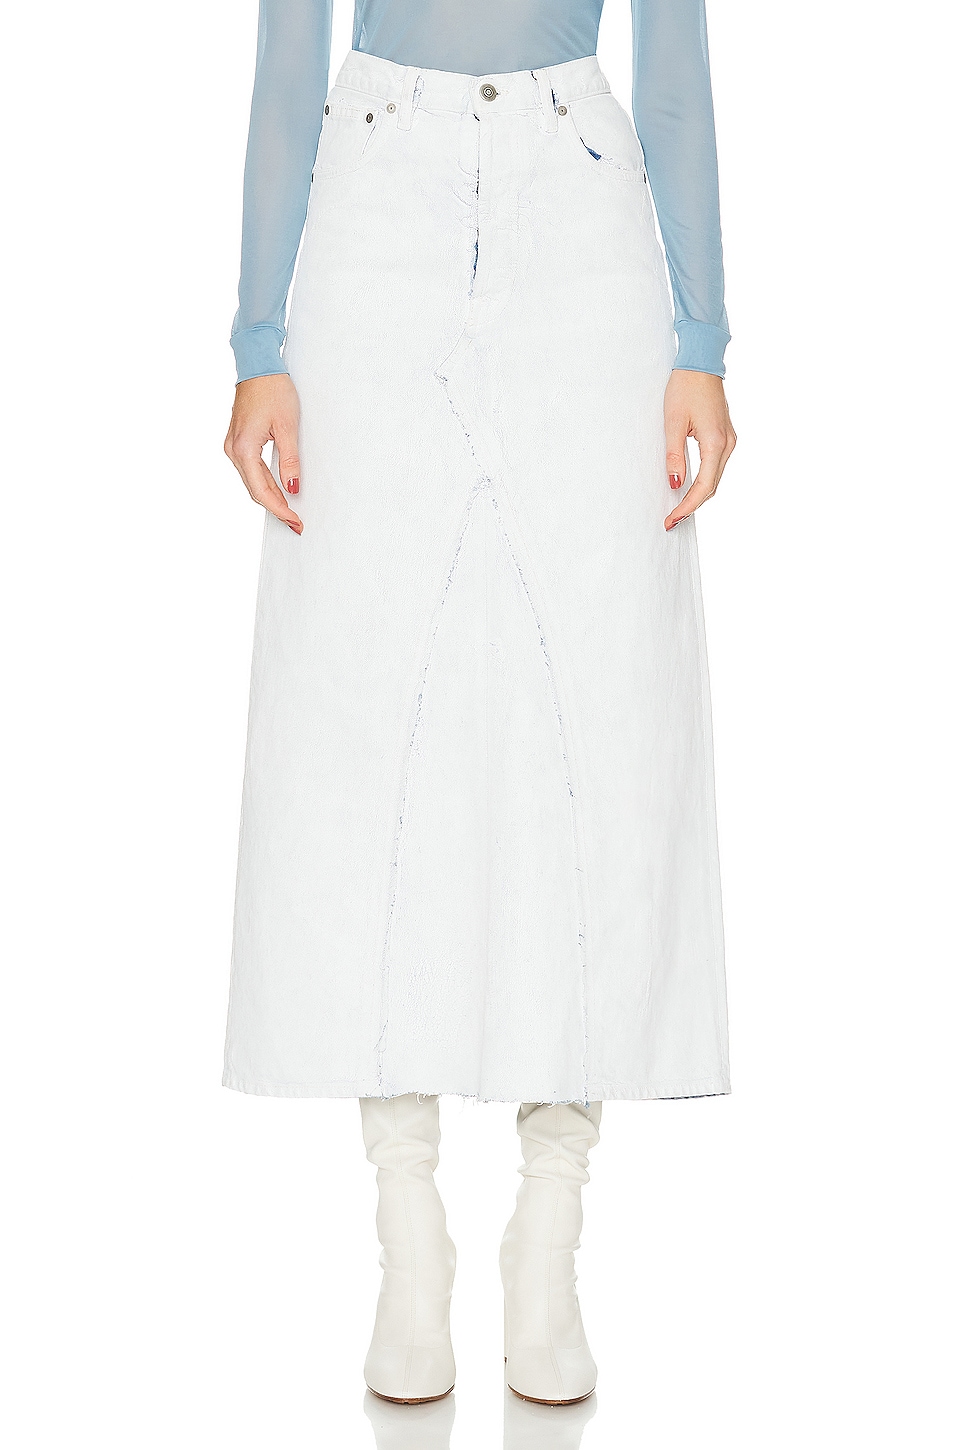 Image 1 of Maison Margiela Origin Denim Skirt in White Paint